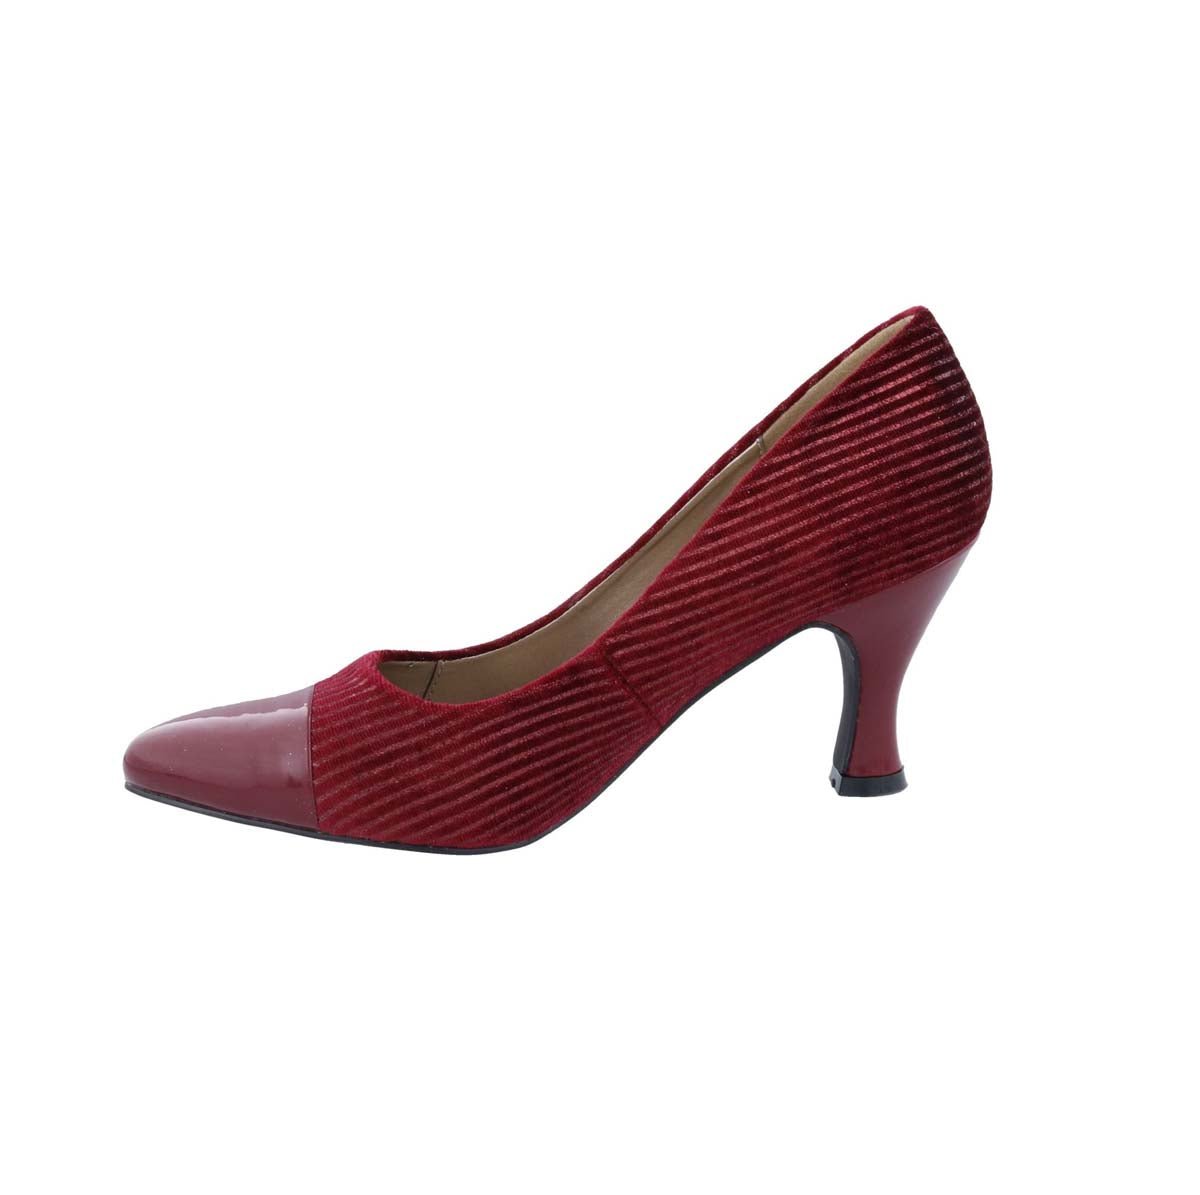 BELLINI ZESTY CORD WOMEN PUMP SLIP-ON IN WINE CORDUROY - TLW Shoes